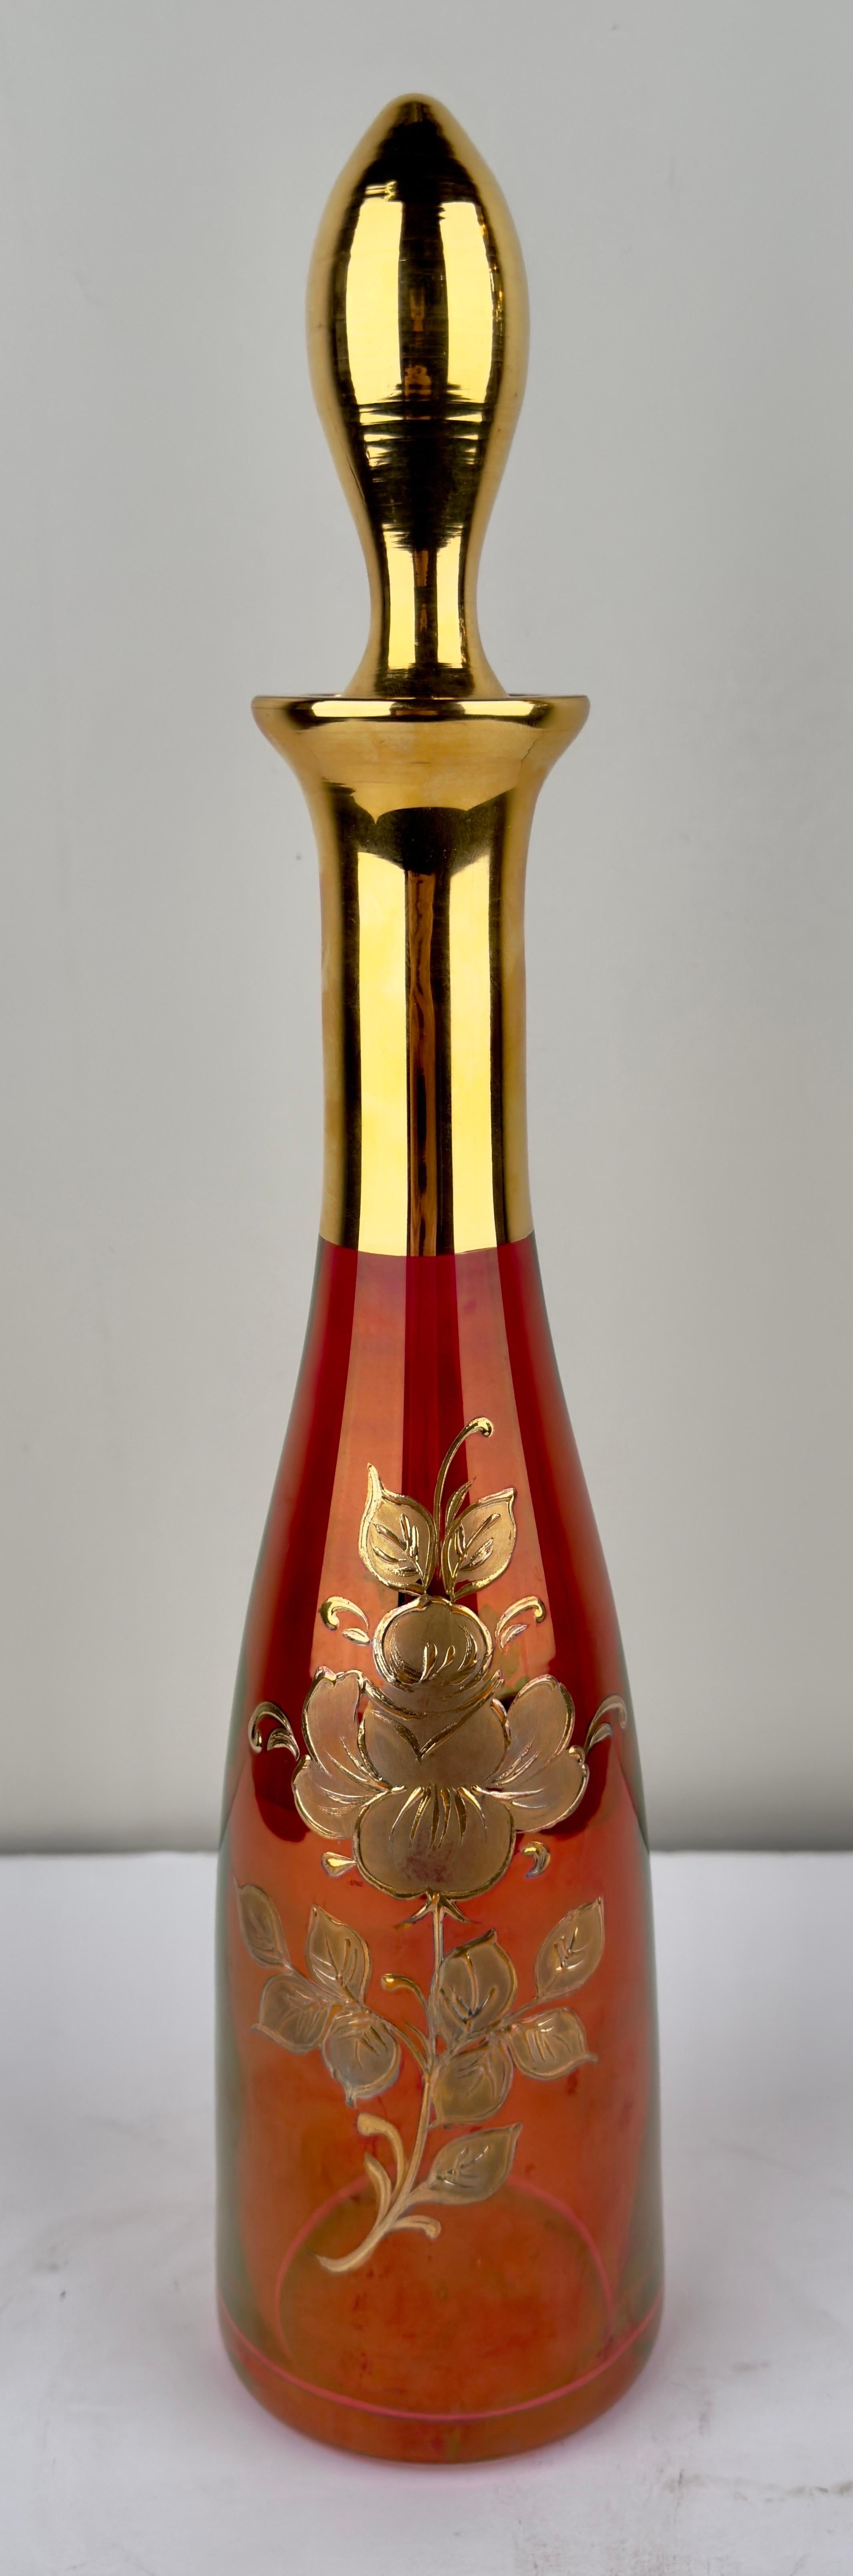 Une exquise parure autrichienne Art Nouveau des années 1920, avec des rubis radieux embrassés par l'opulence de l'or 24k. 
Les verres à vin sont ornés de gravures florales complexes qui dansent sur la surface. Leur base est recouverte de feuilles